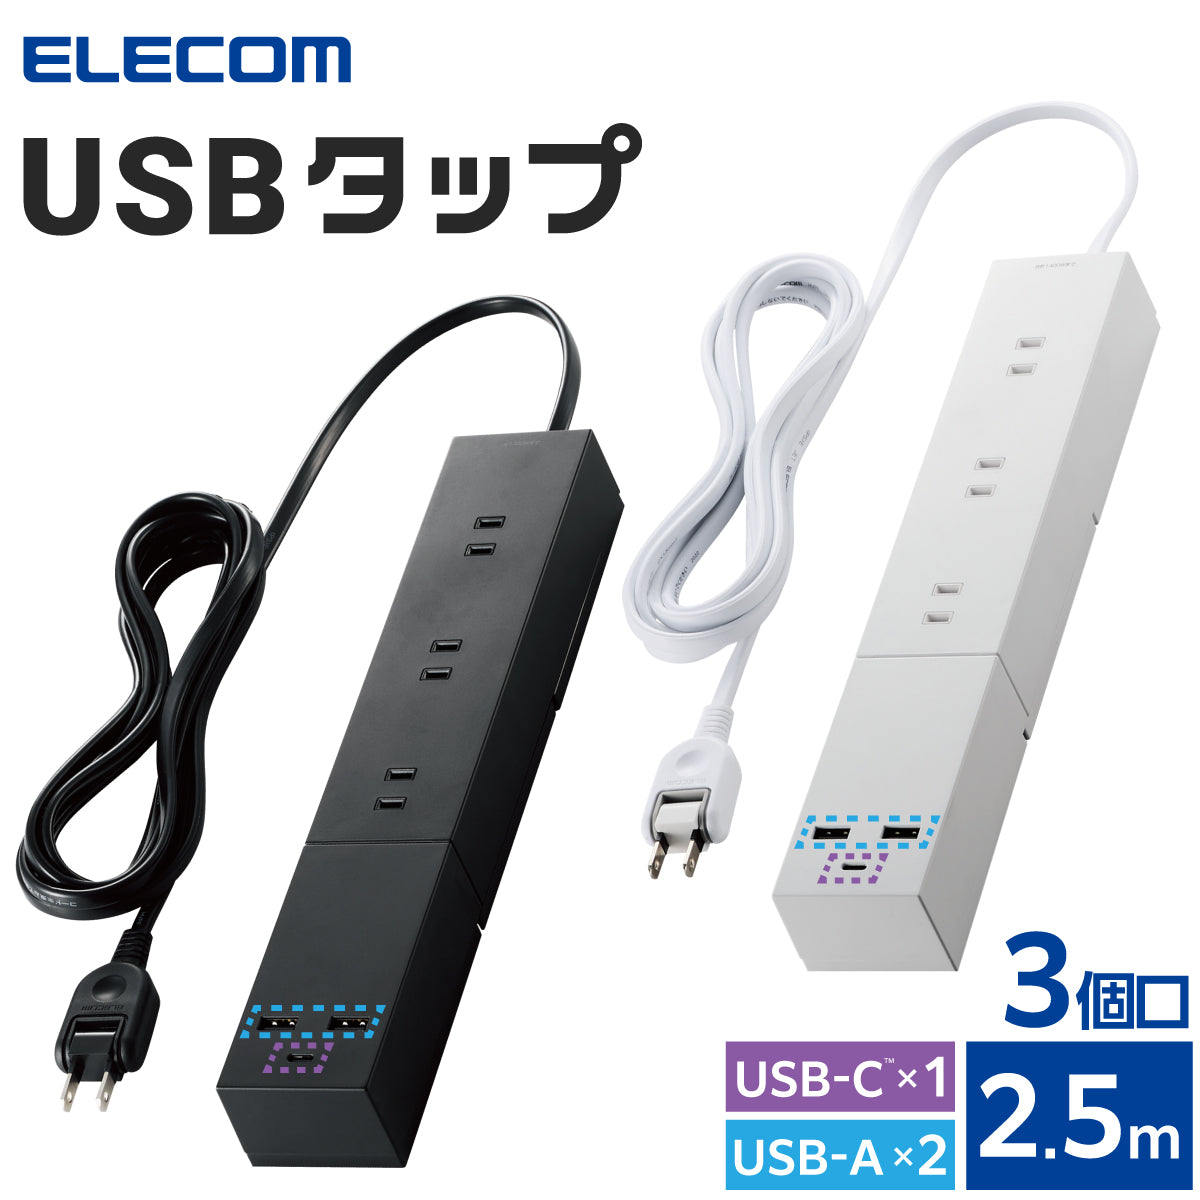 エレコム USBタップ USB Type-C×1(最大30W) USB-A×2(最大12W) 最大出力32W AC差込口×3 脚パーツ付き 2.5m